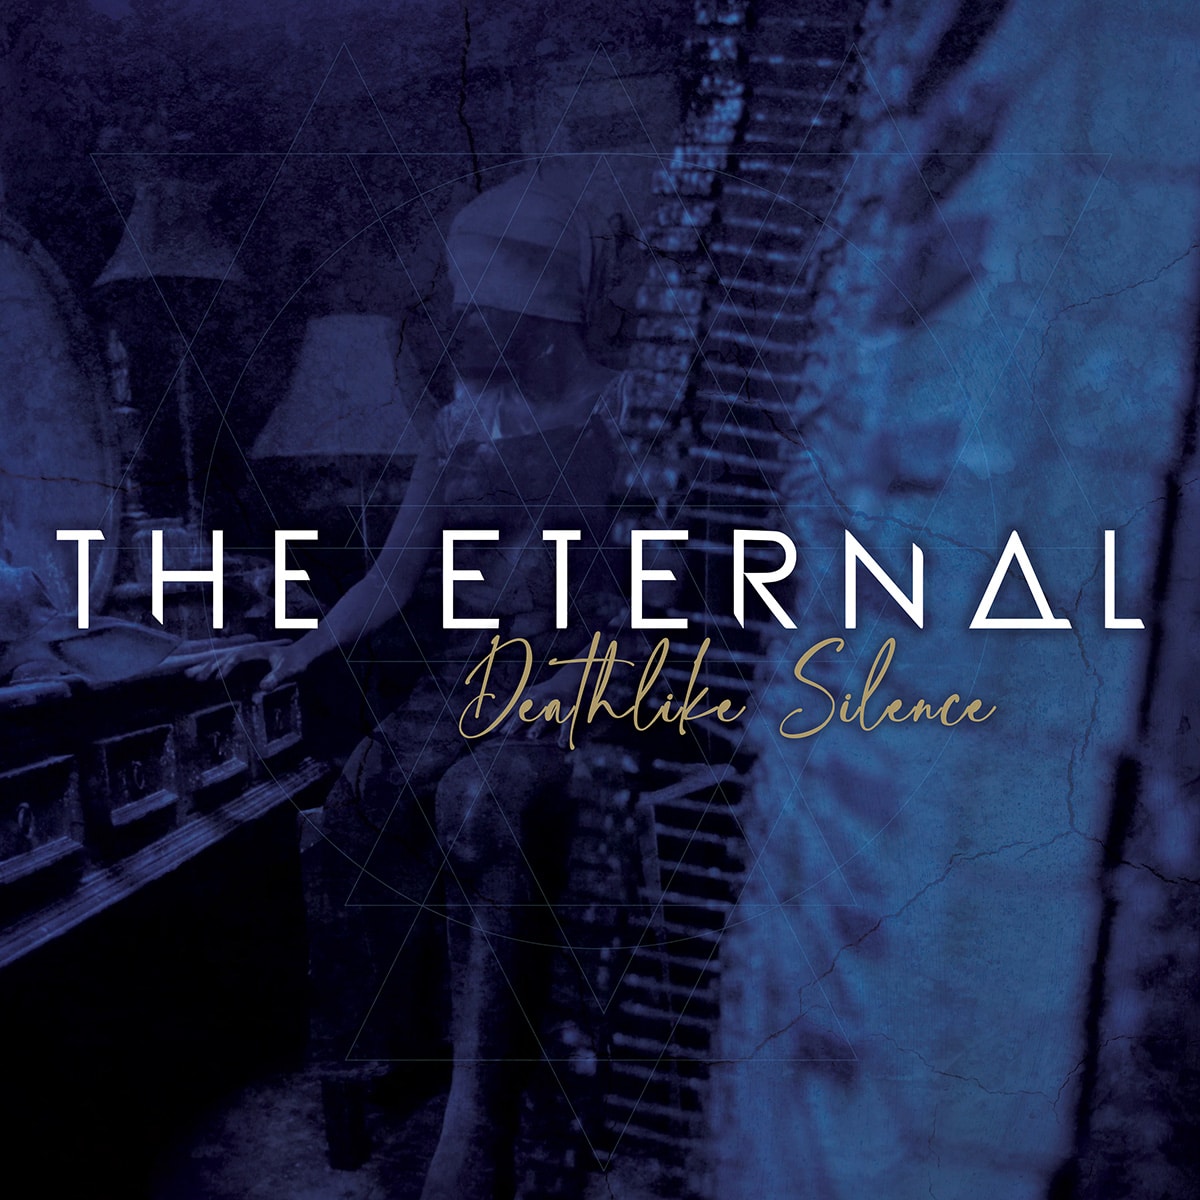 The Eternal - Death Like Silence